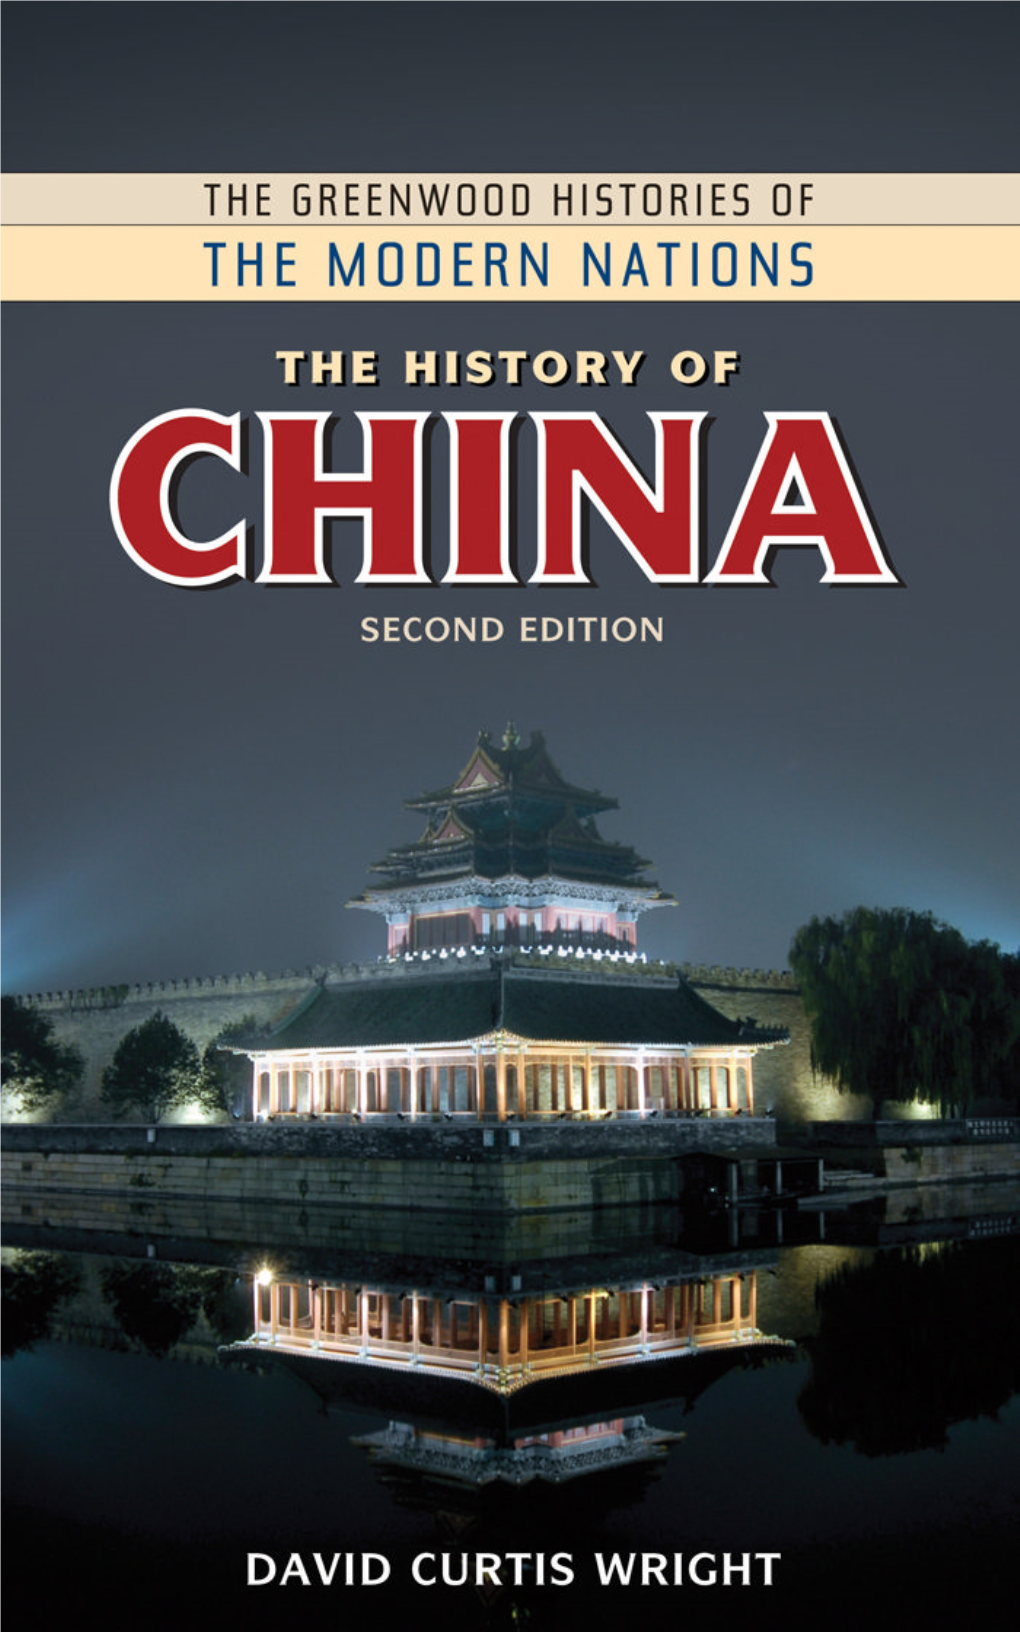 The History of China Advisory Board